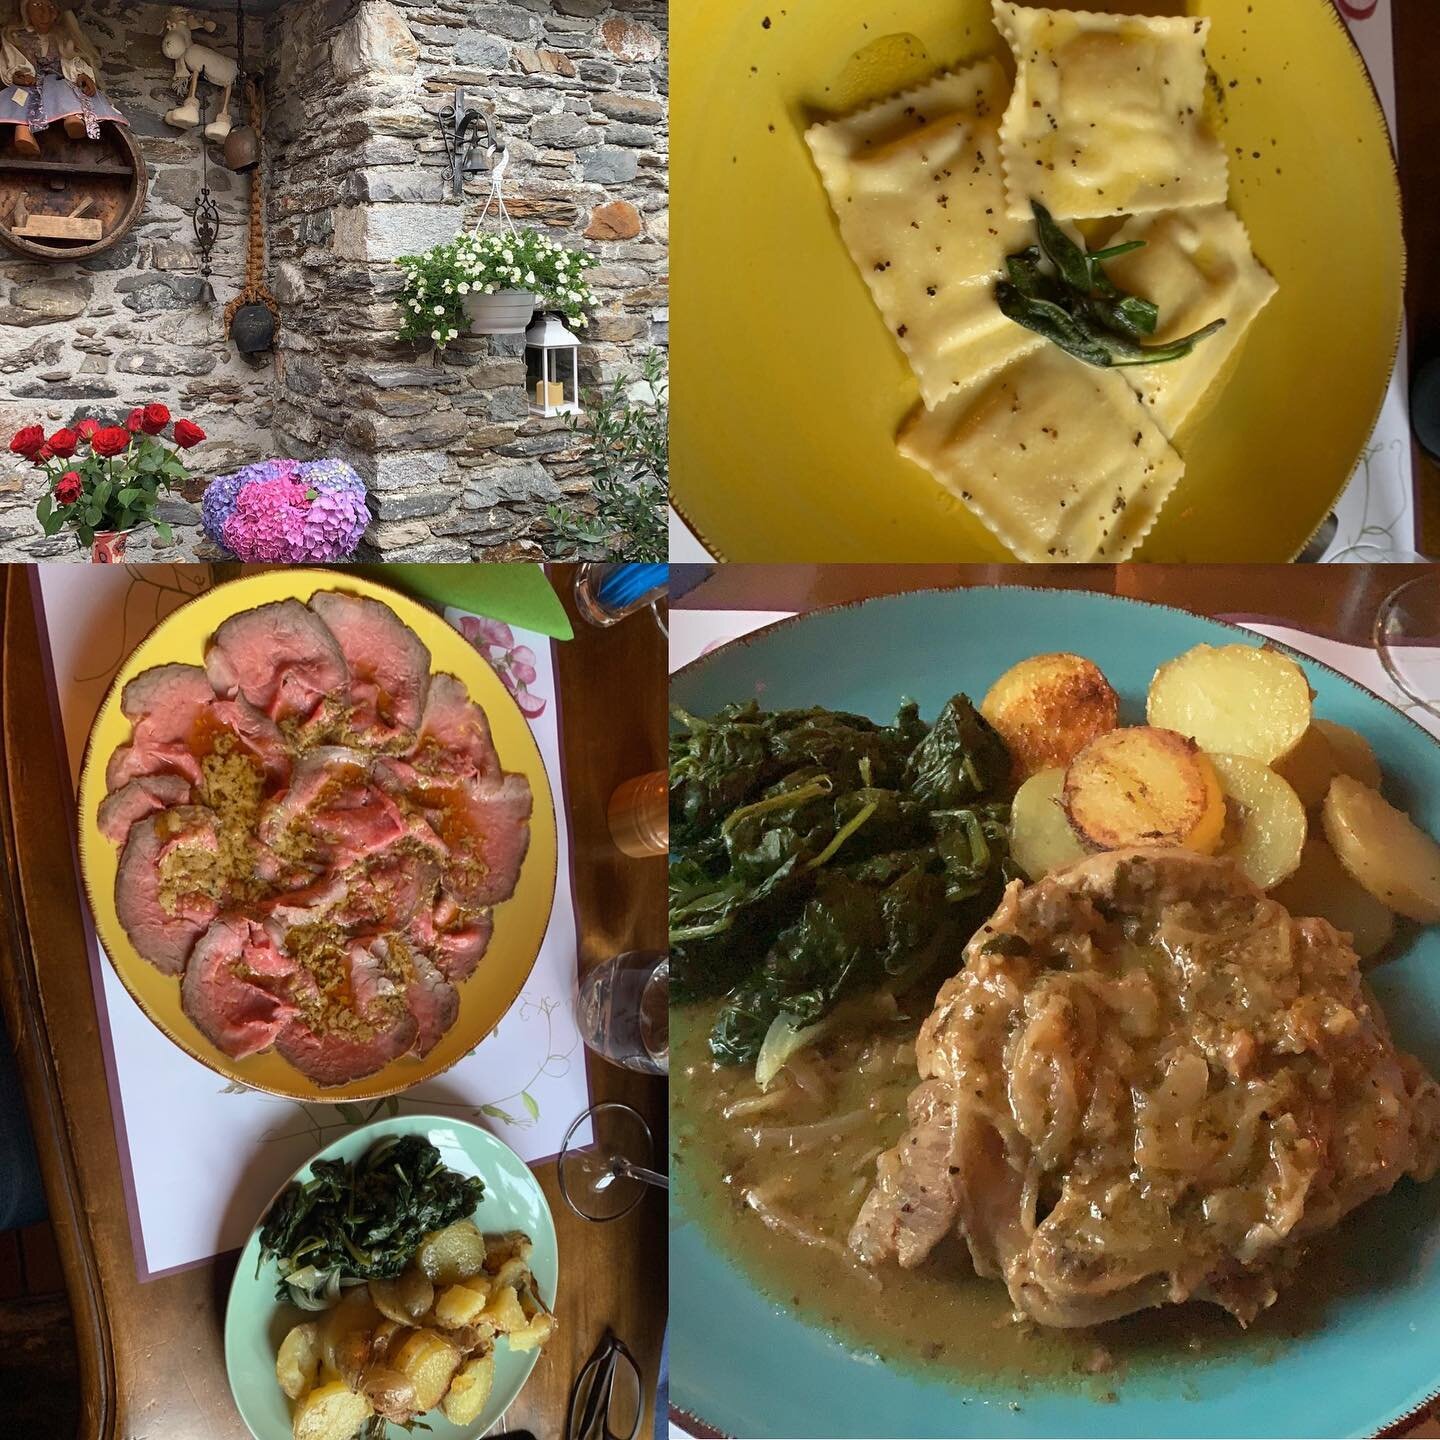 Fantastic Dinner in Grotto La Strega, Quartino 😋
.
.

#brissago #myasconalocarno #lagomaggiore #locarno #Ticino #tessin #ticinoturismo #visitticino #cantonticino #inlovewithswitzerland 
#innamoratidellasvizzera #verliebtindieschweiz #amazingswitzerl